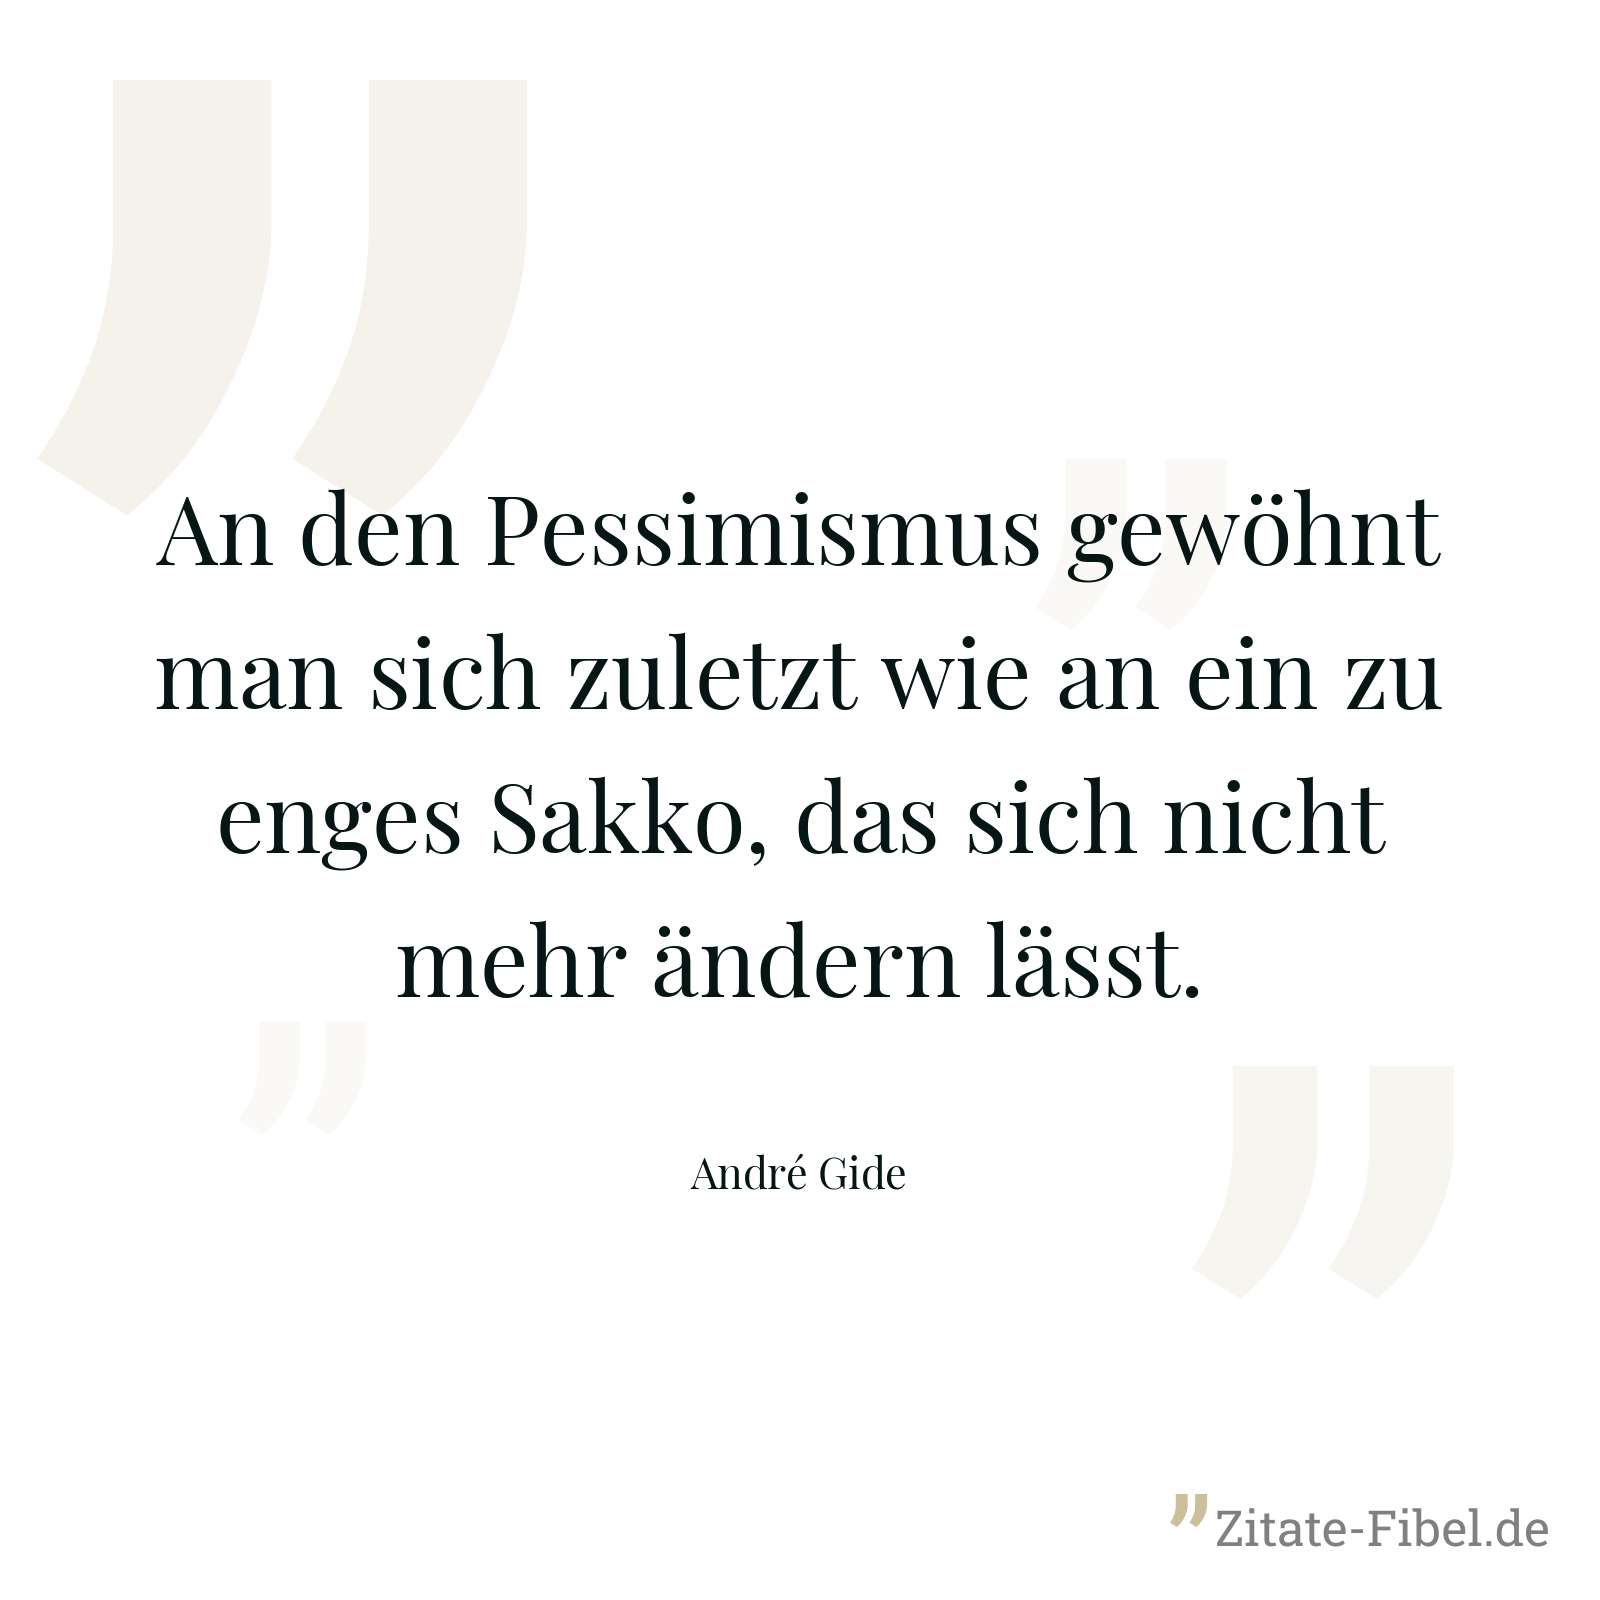 An den Pessimismus gewöhnt man sich zuletzt wie an ein zu enges Sakko, das sich nicht mehr ändern lässt. - André Gide